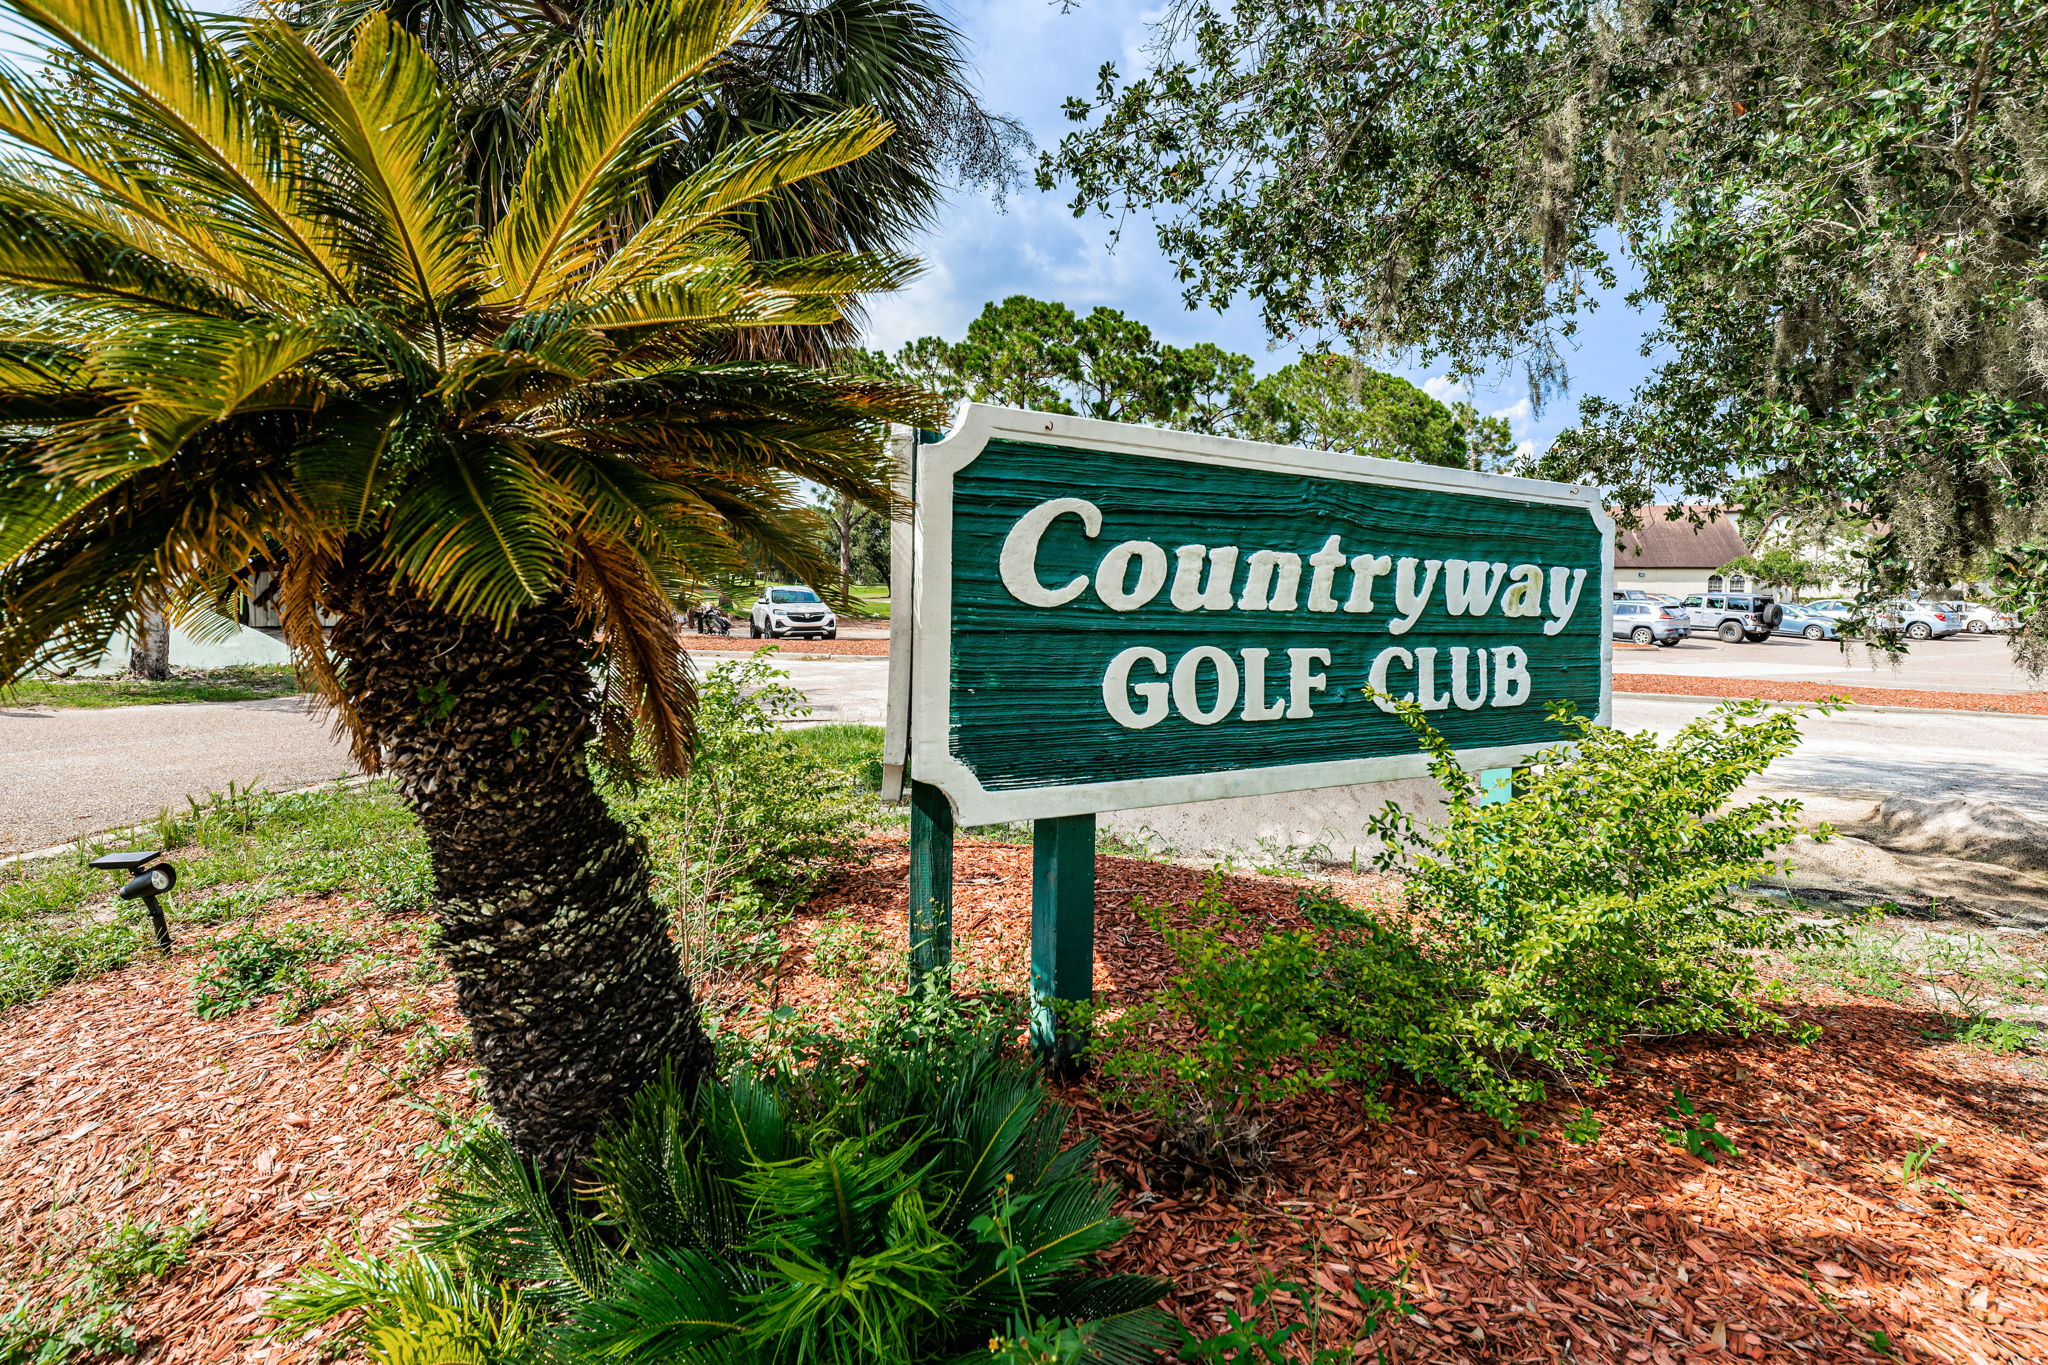 12-Countryway Golf Club